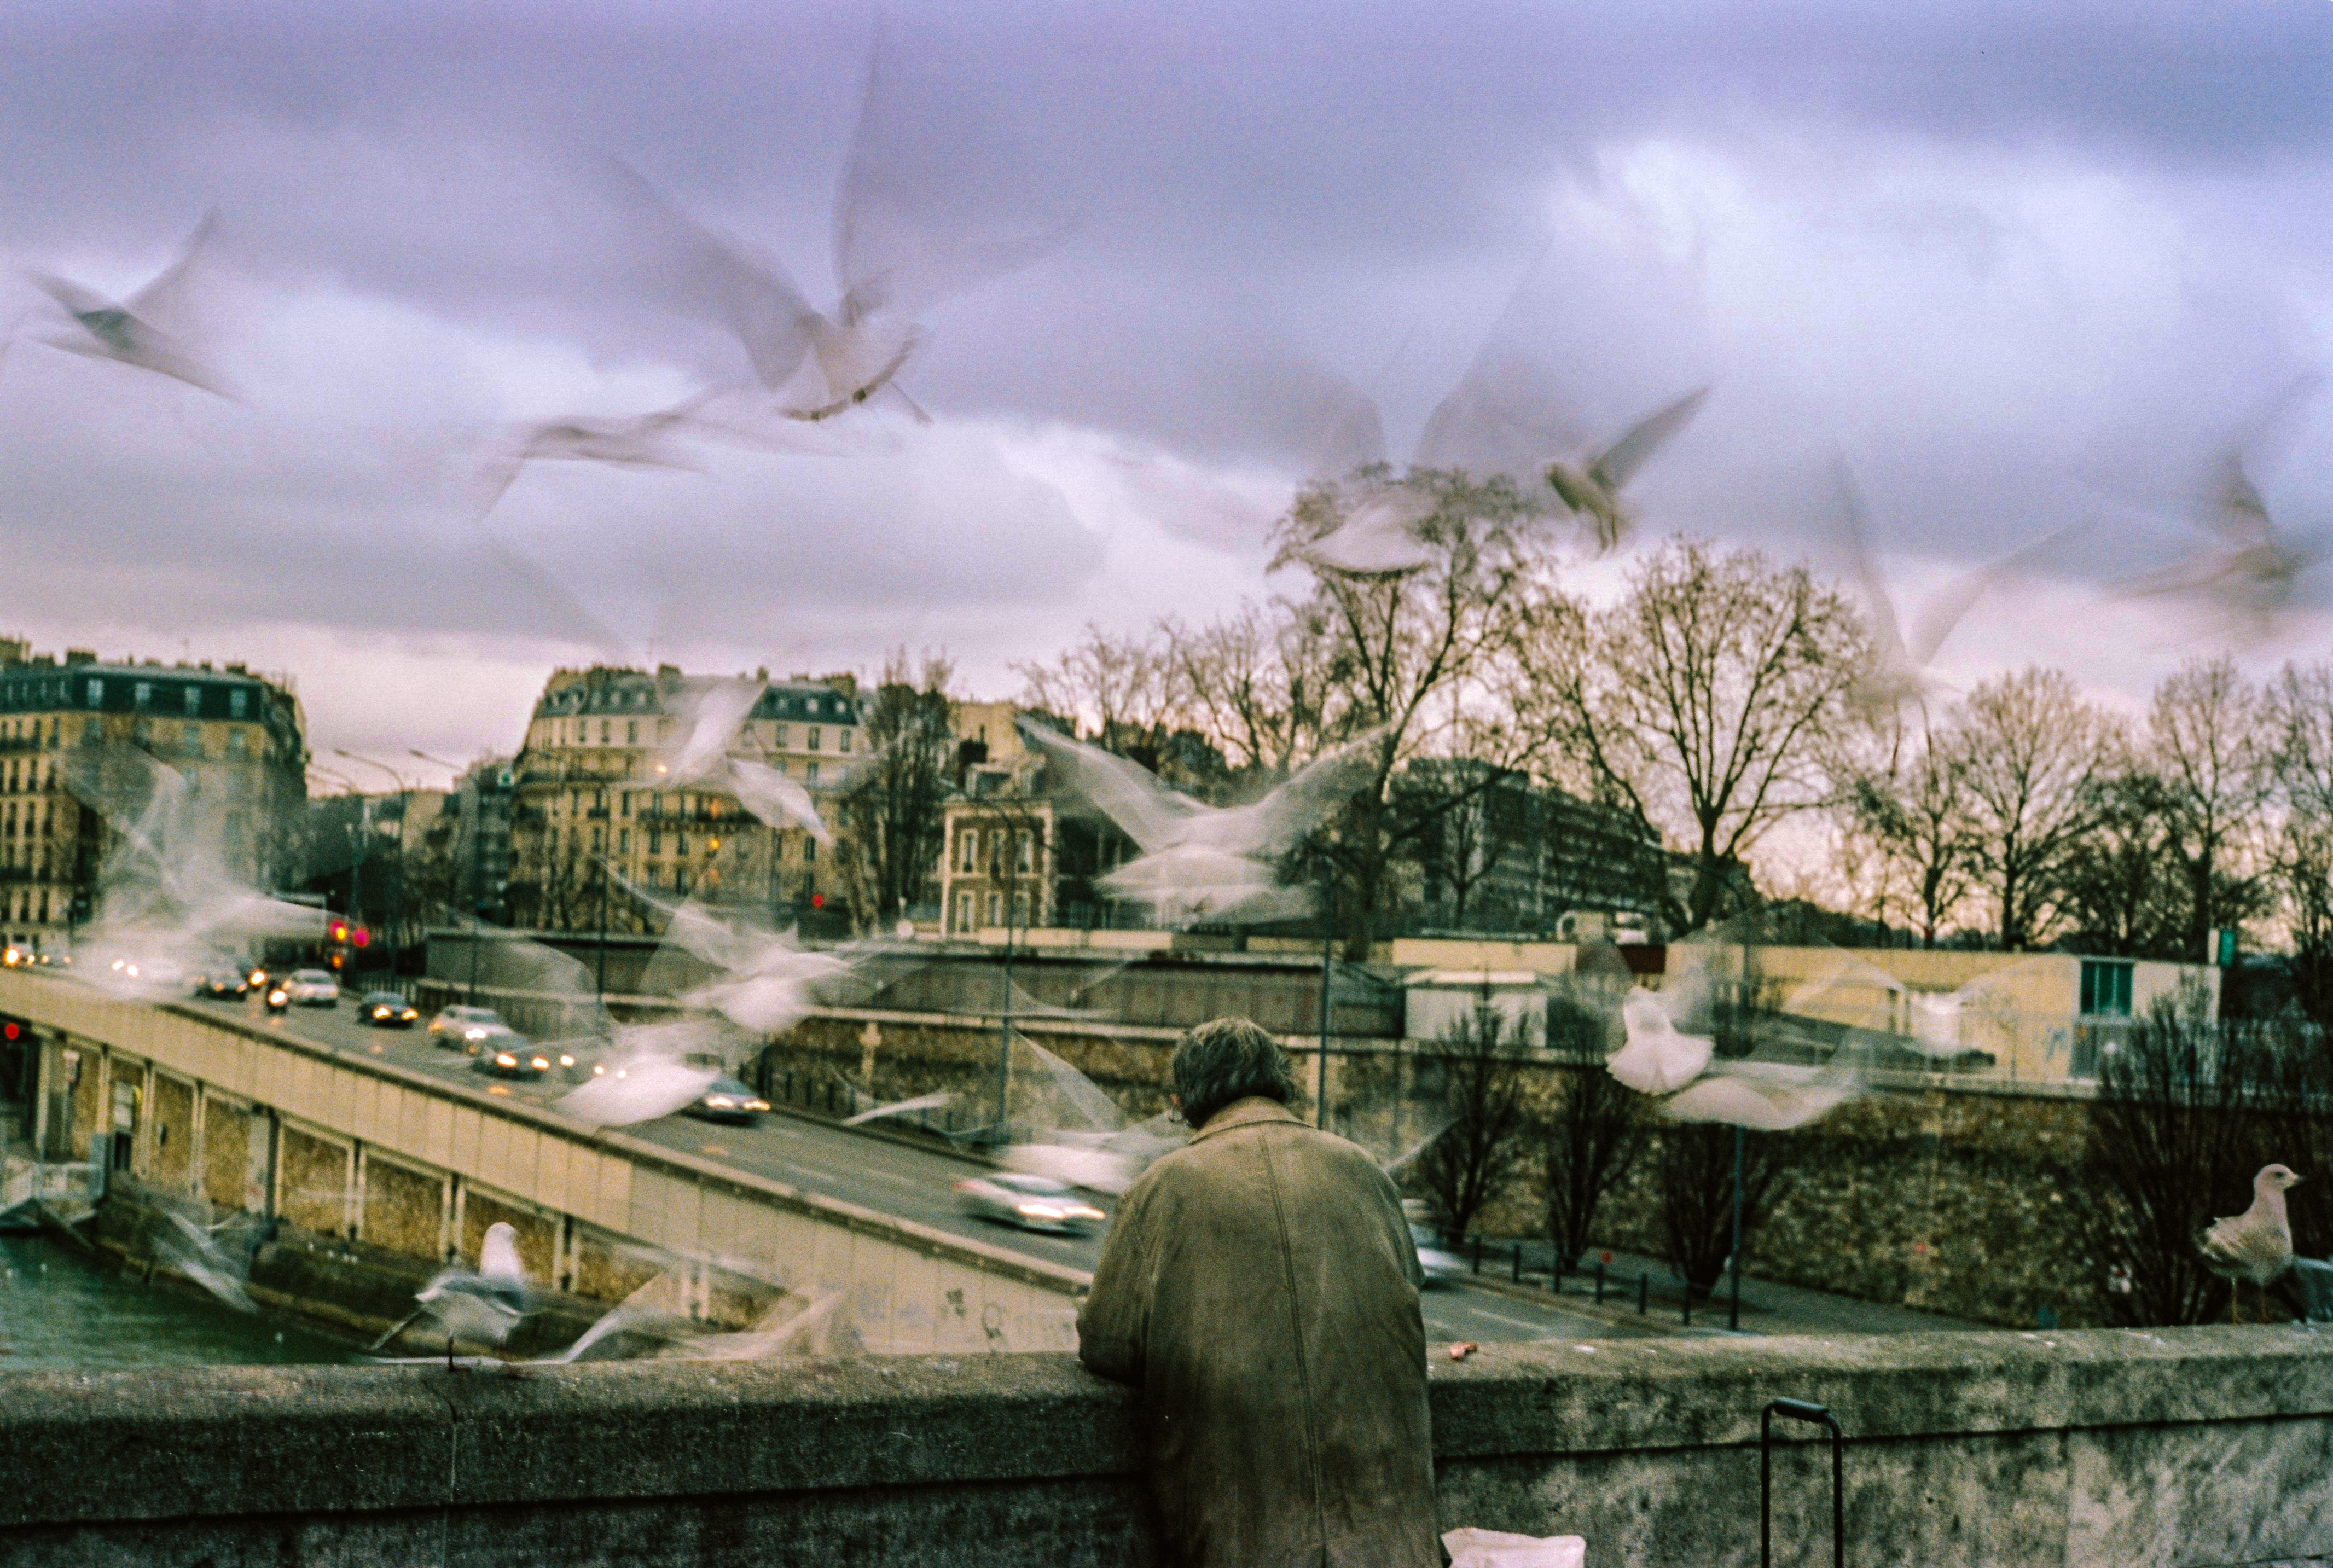 Image extraite de la série "Paris" / © Léo Berne